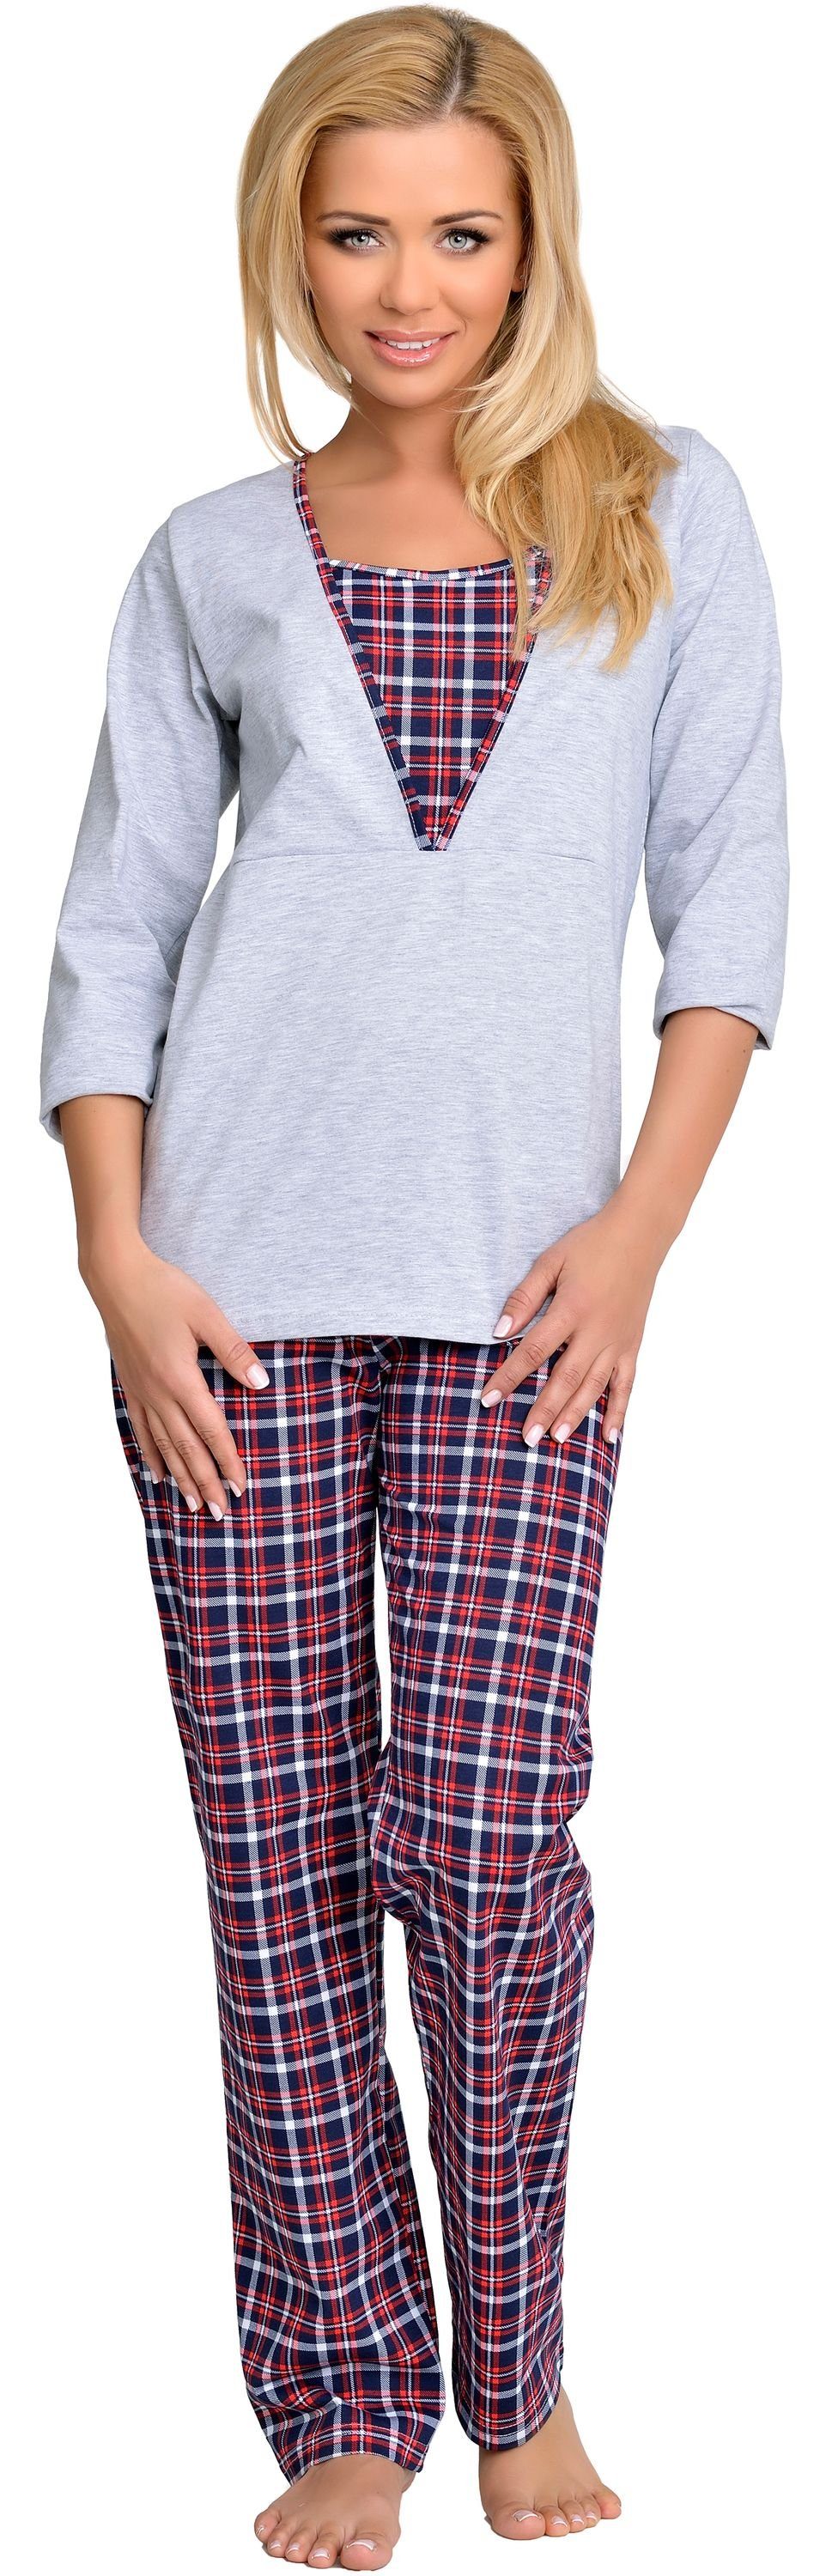 Umstandspyjama Schlafanzug Damen Melange-2 Be 1N2TT2 Stillpyjama Mammy